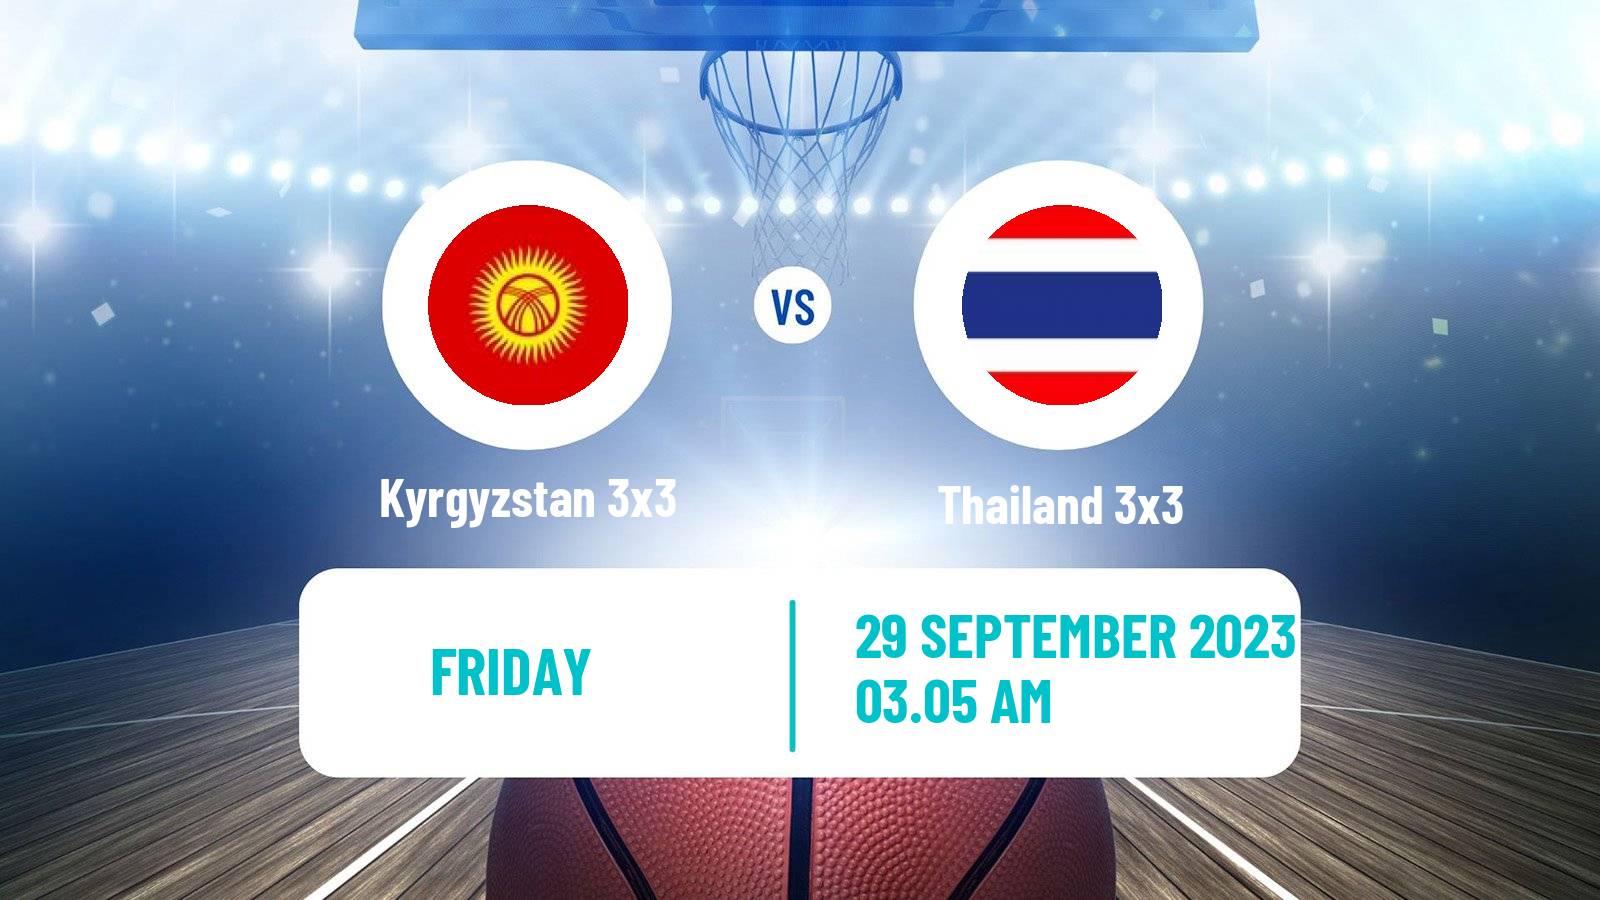 Basketball Asian Games Basketball 3x3 Kyrgyzstan 3x3 - Thailand 3x3